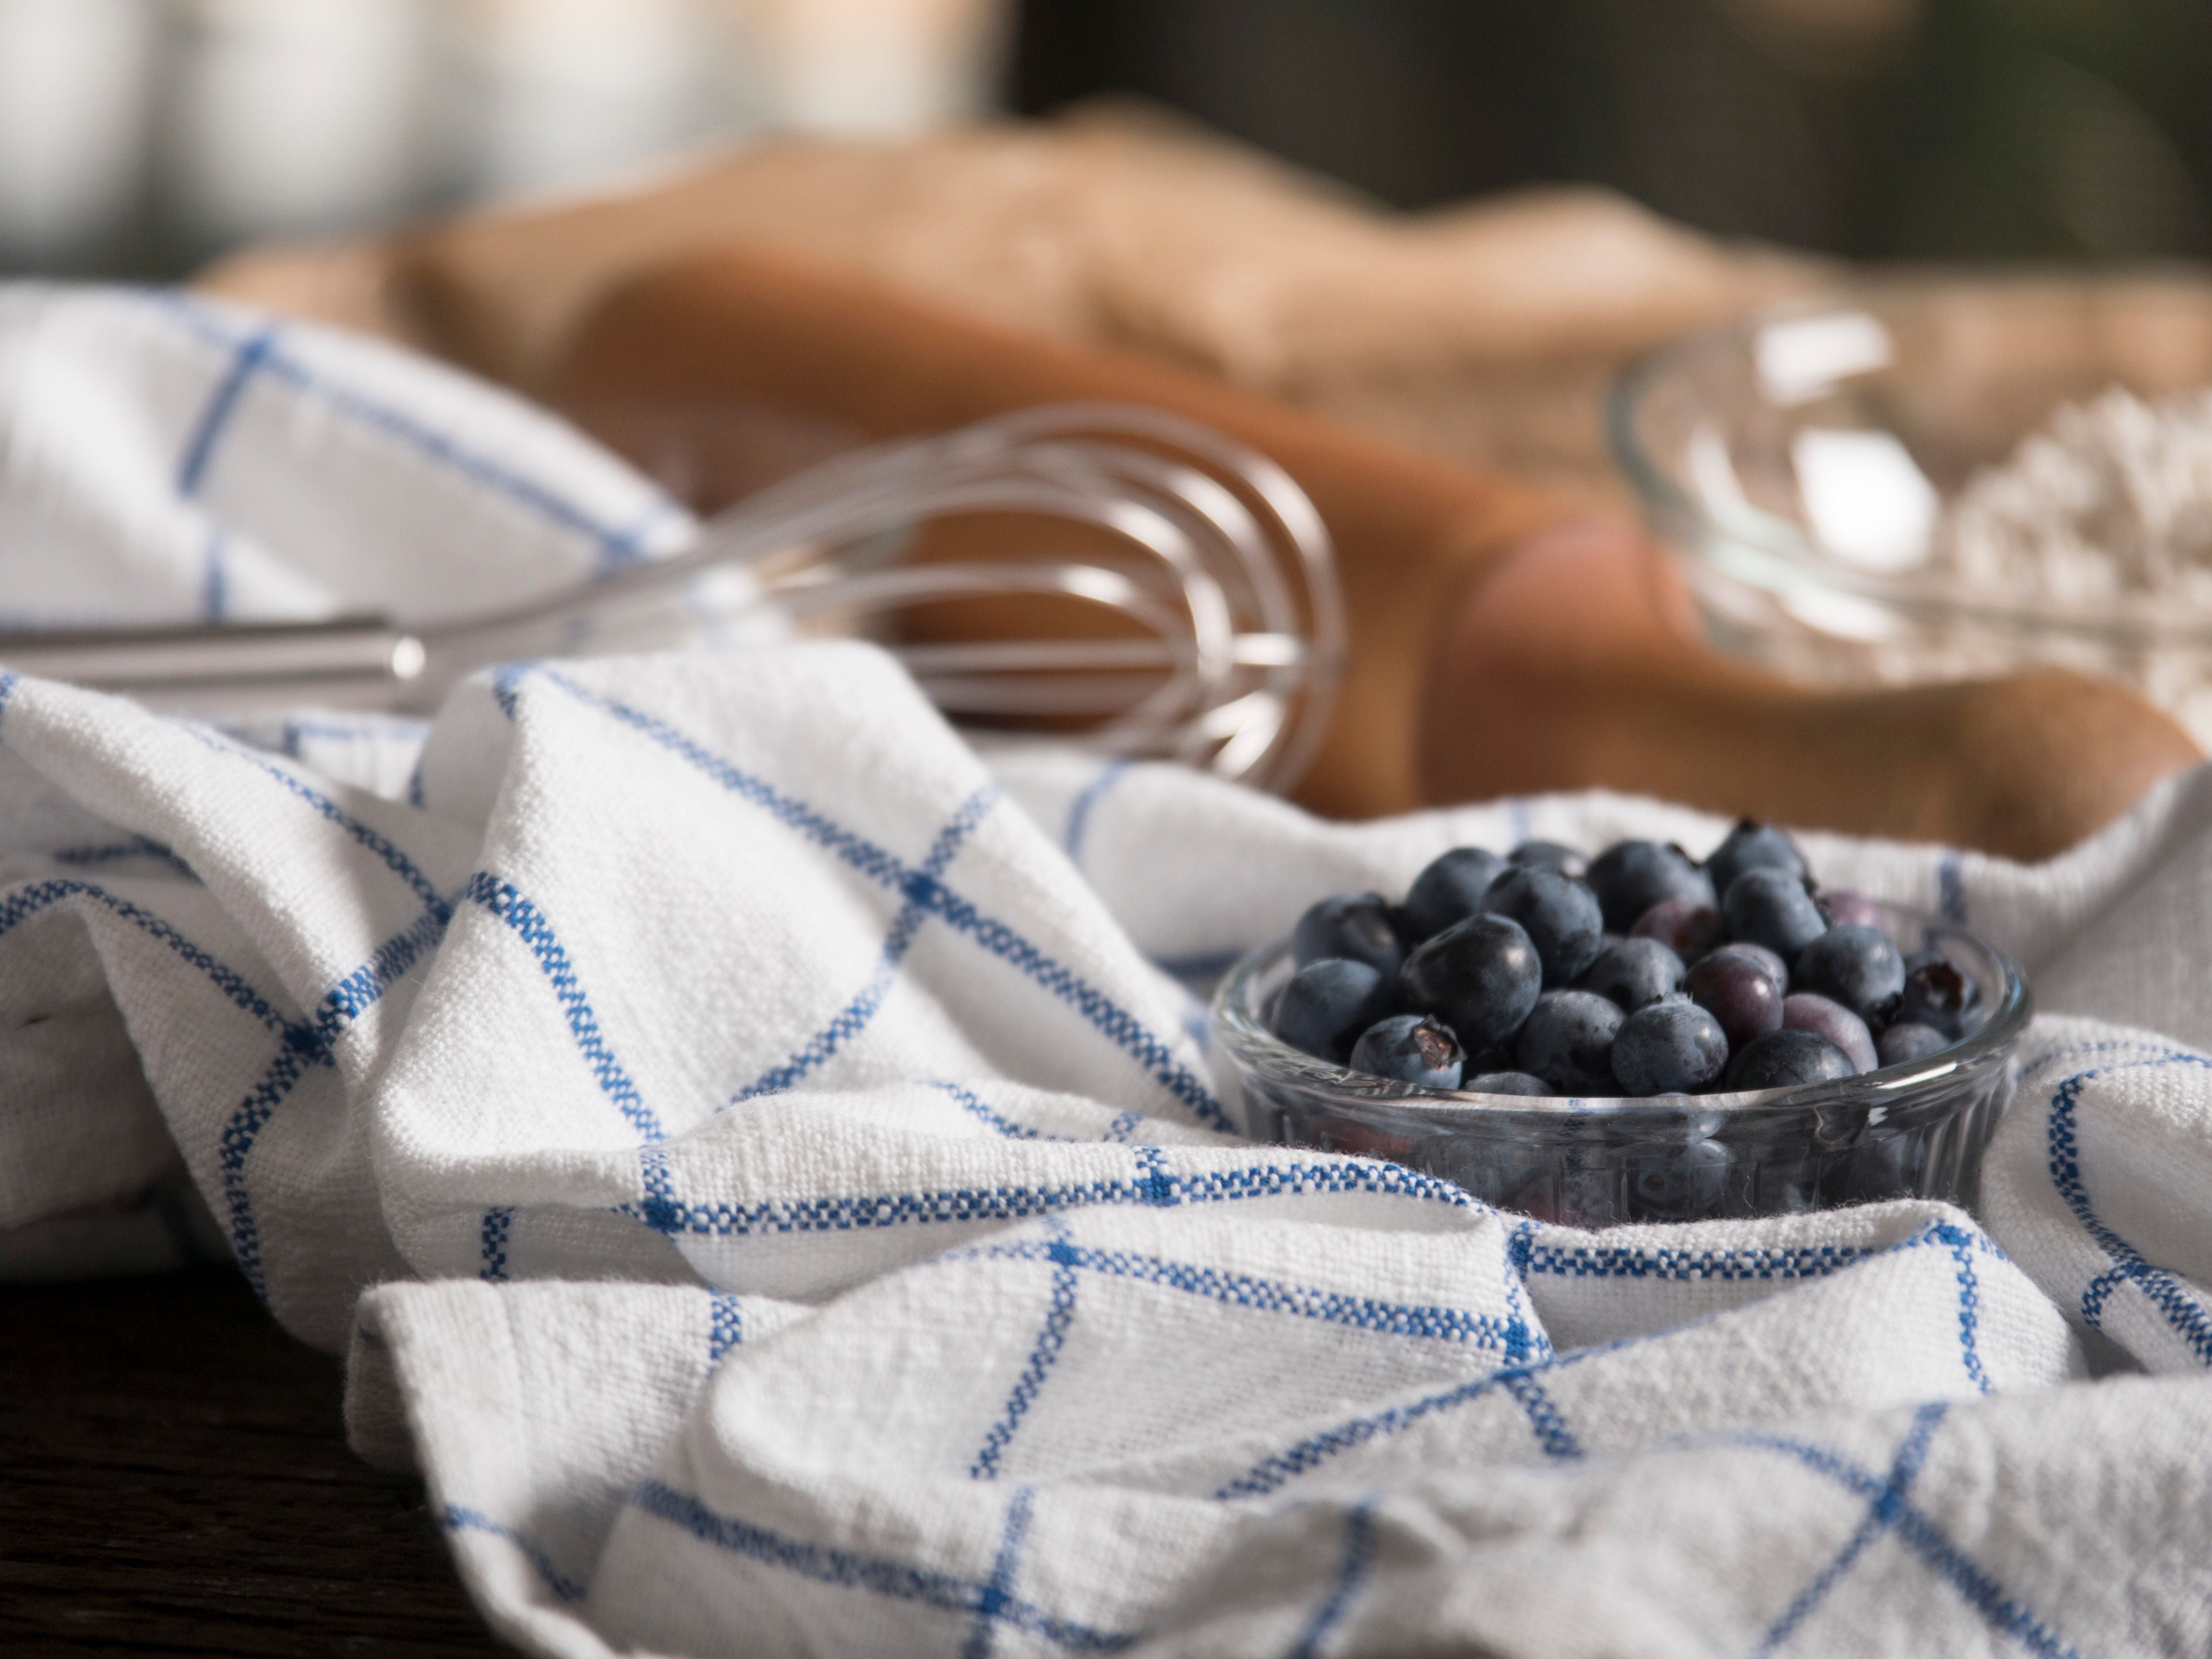 Blueberry Kitchen Towel